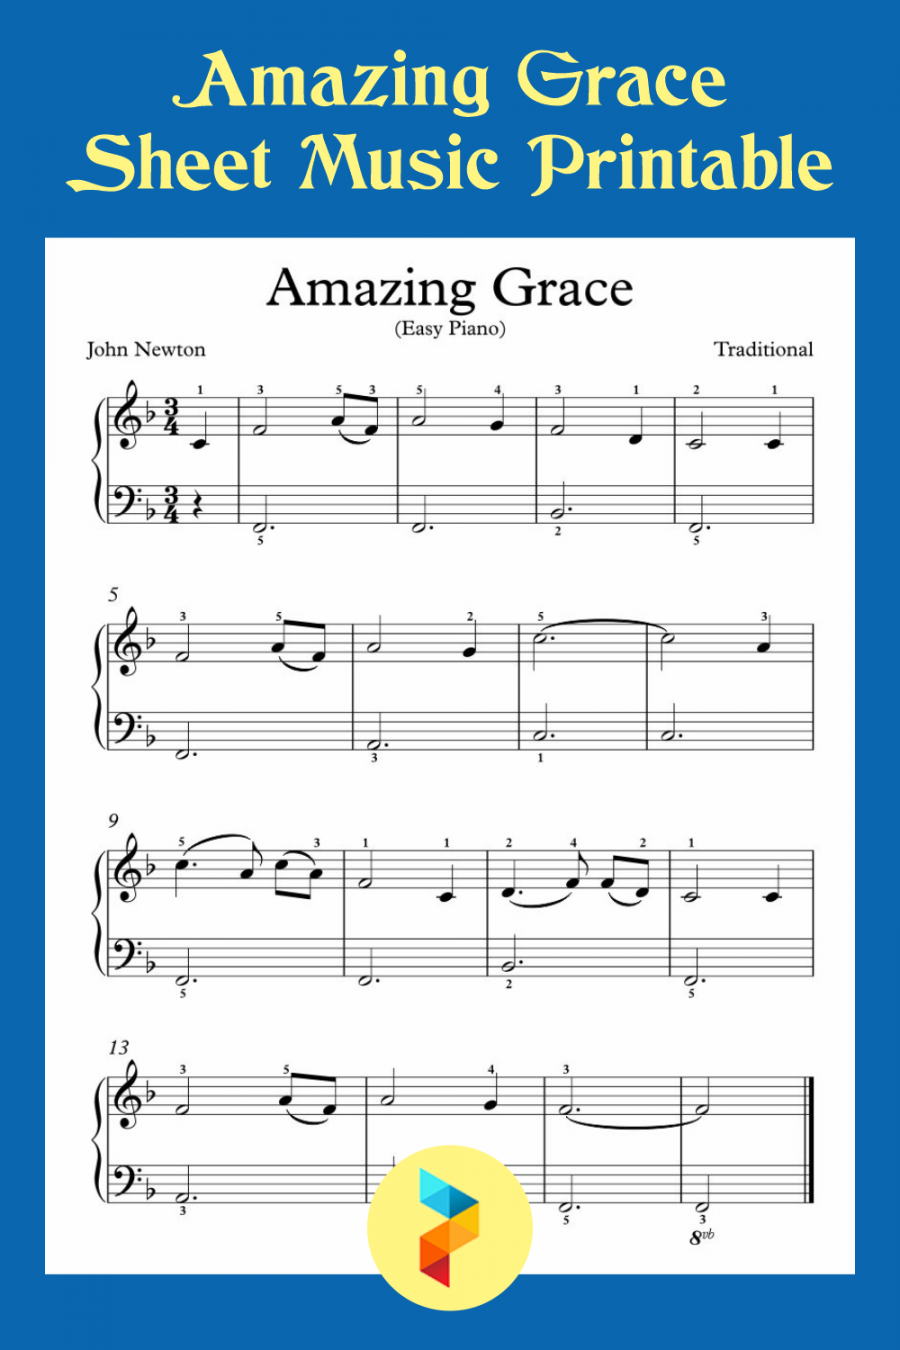 Best Amazing Grace Sheet Music Printable - printablee